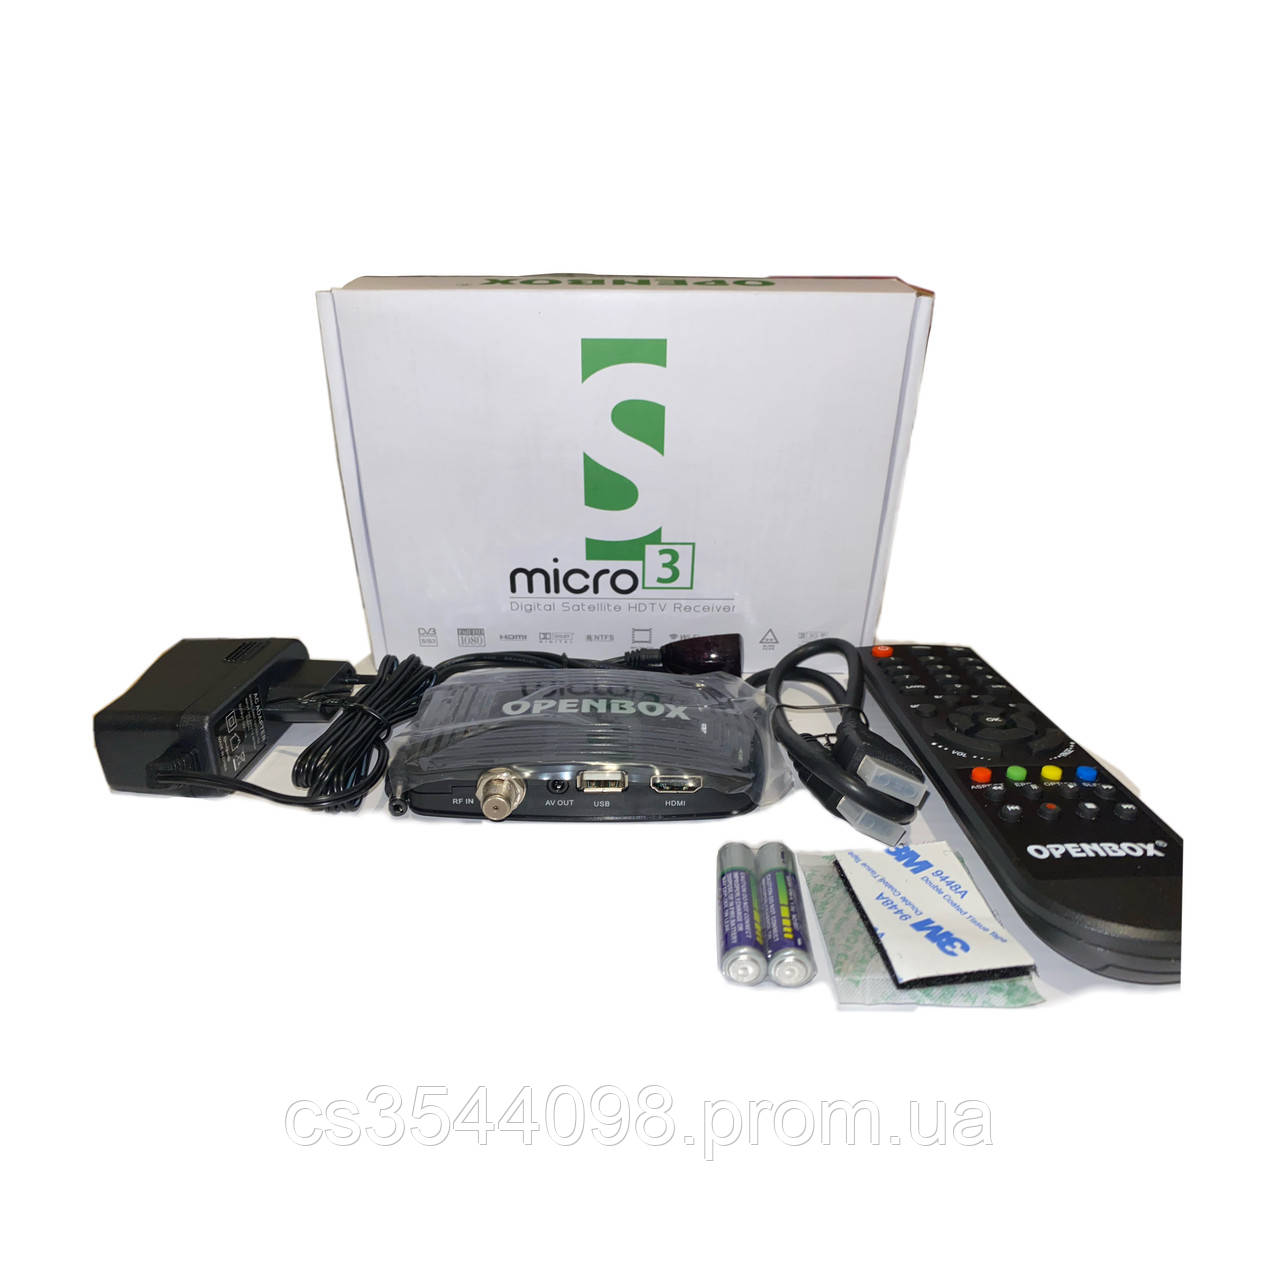 Супутниковий ресівер Openbox S3 micro HD